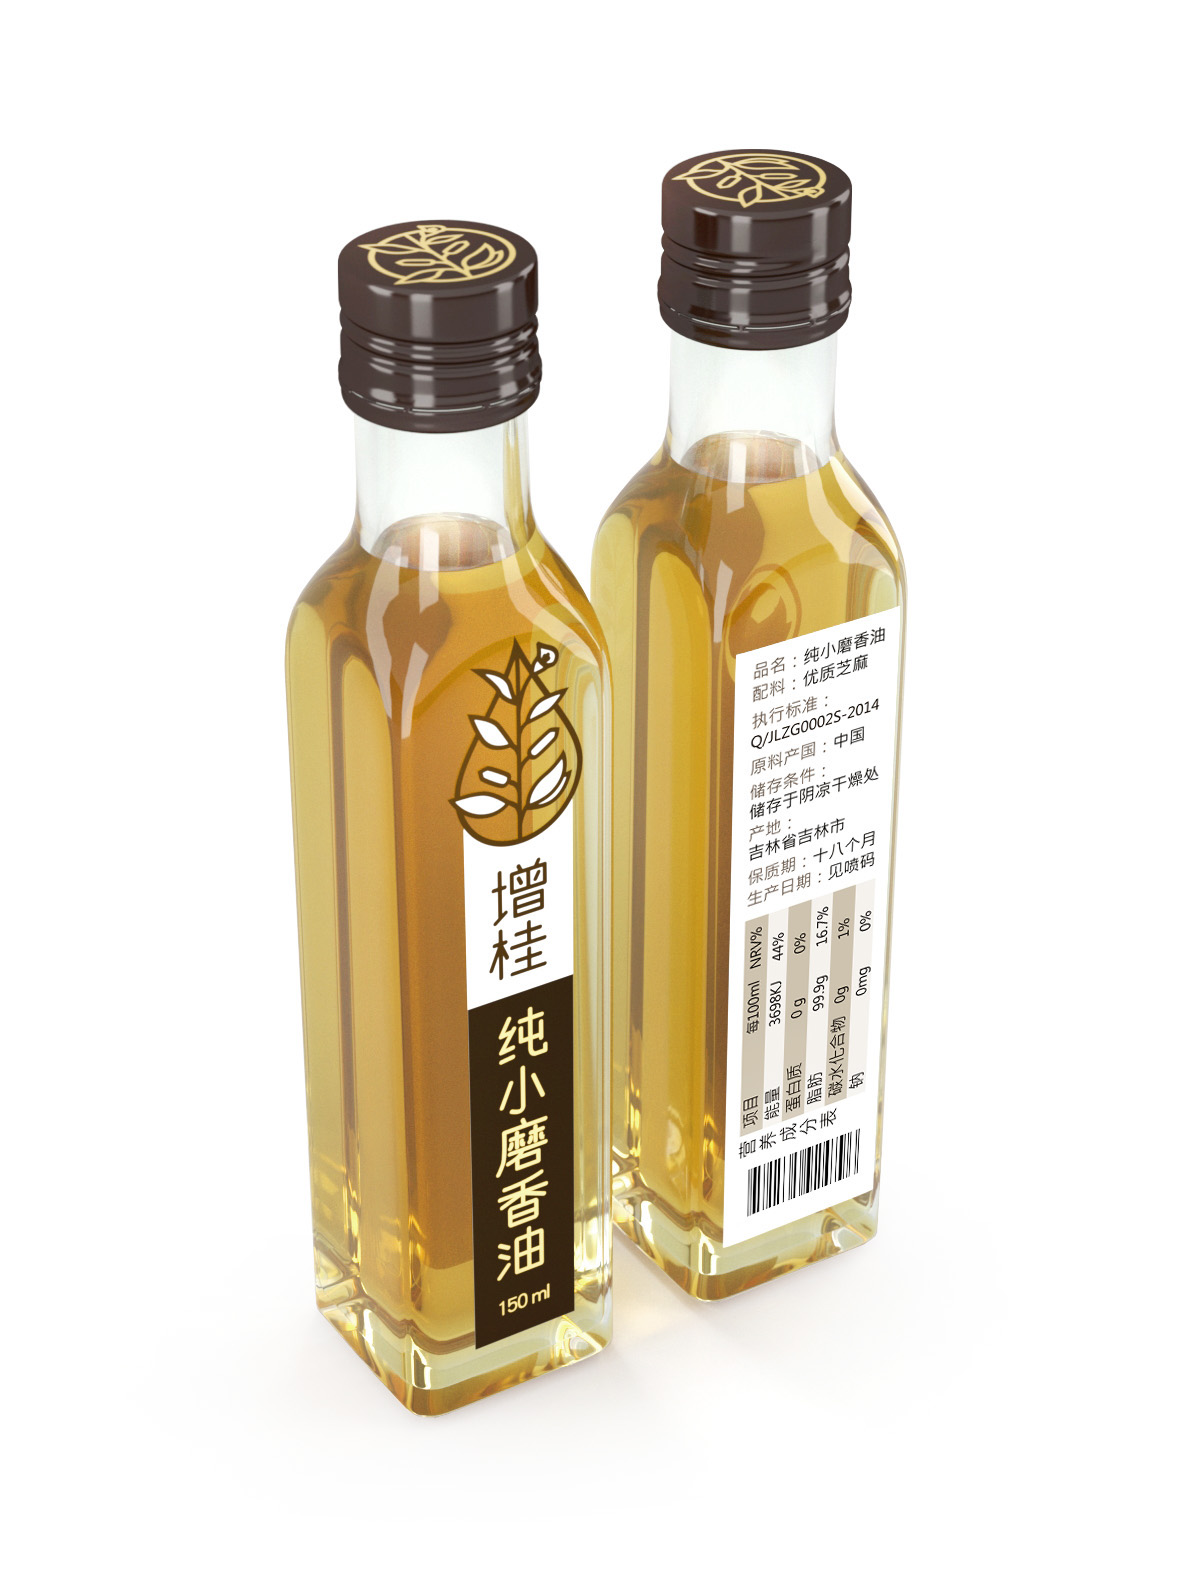 oil package 3D Visualization 3D Rendering product visualisation Oil Bottle 包装设计 品牌设计 产品可视化 3D可视化 Sesame Oil